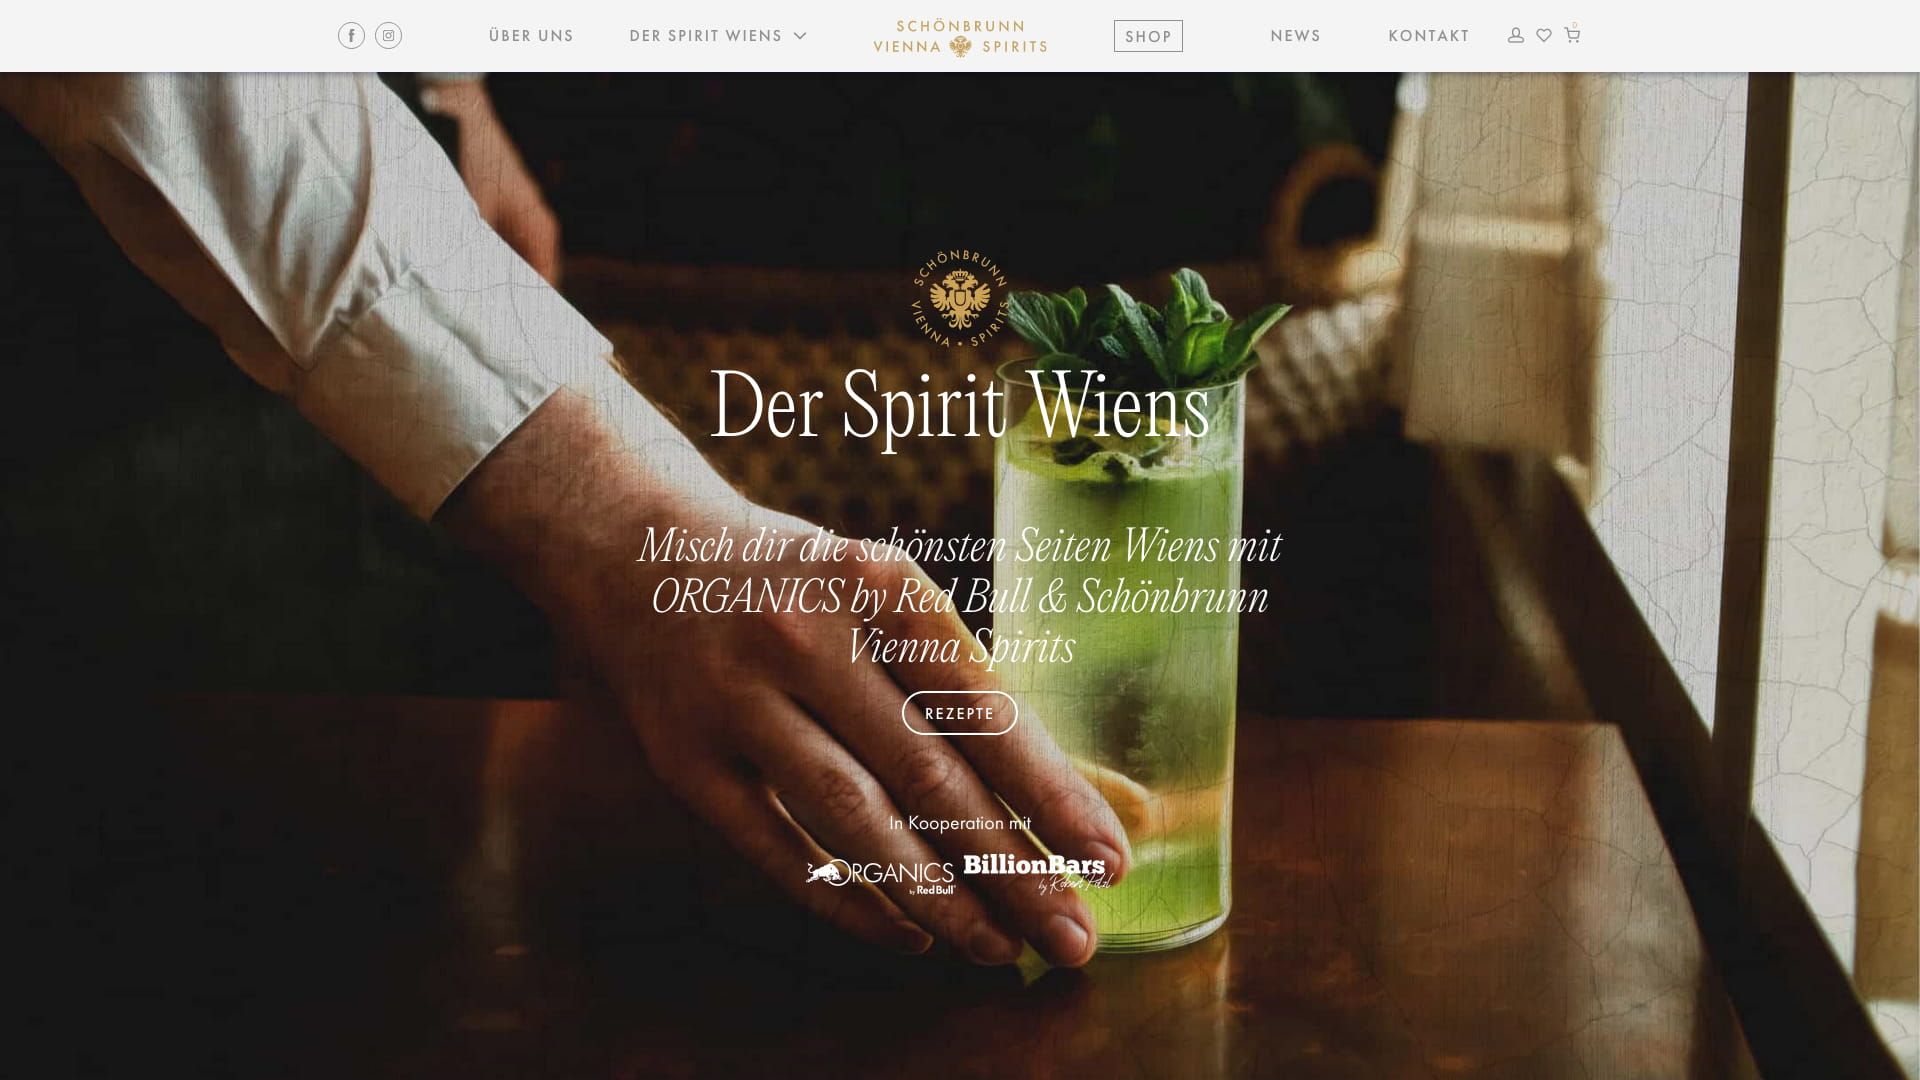 Schönbrunn Spirits Webshop